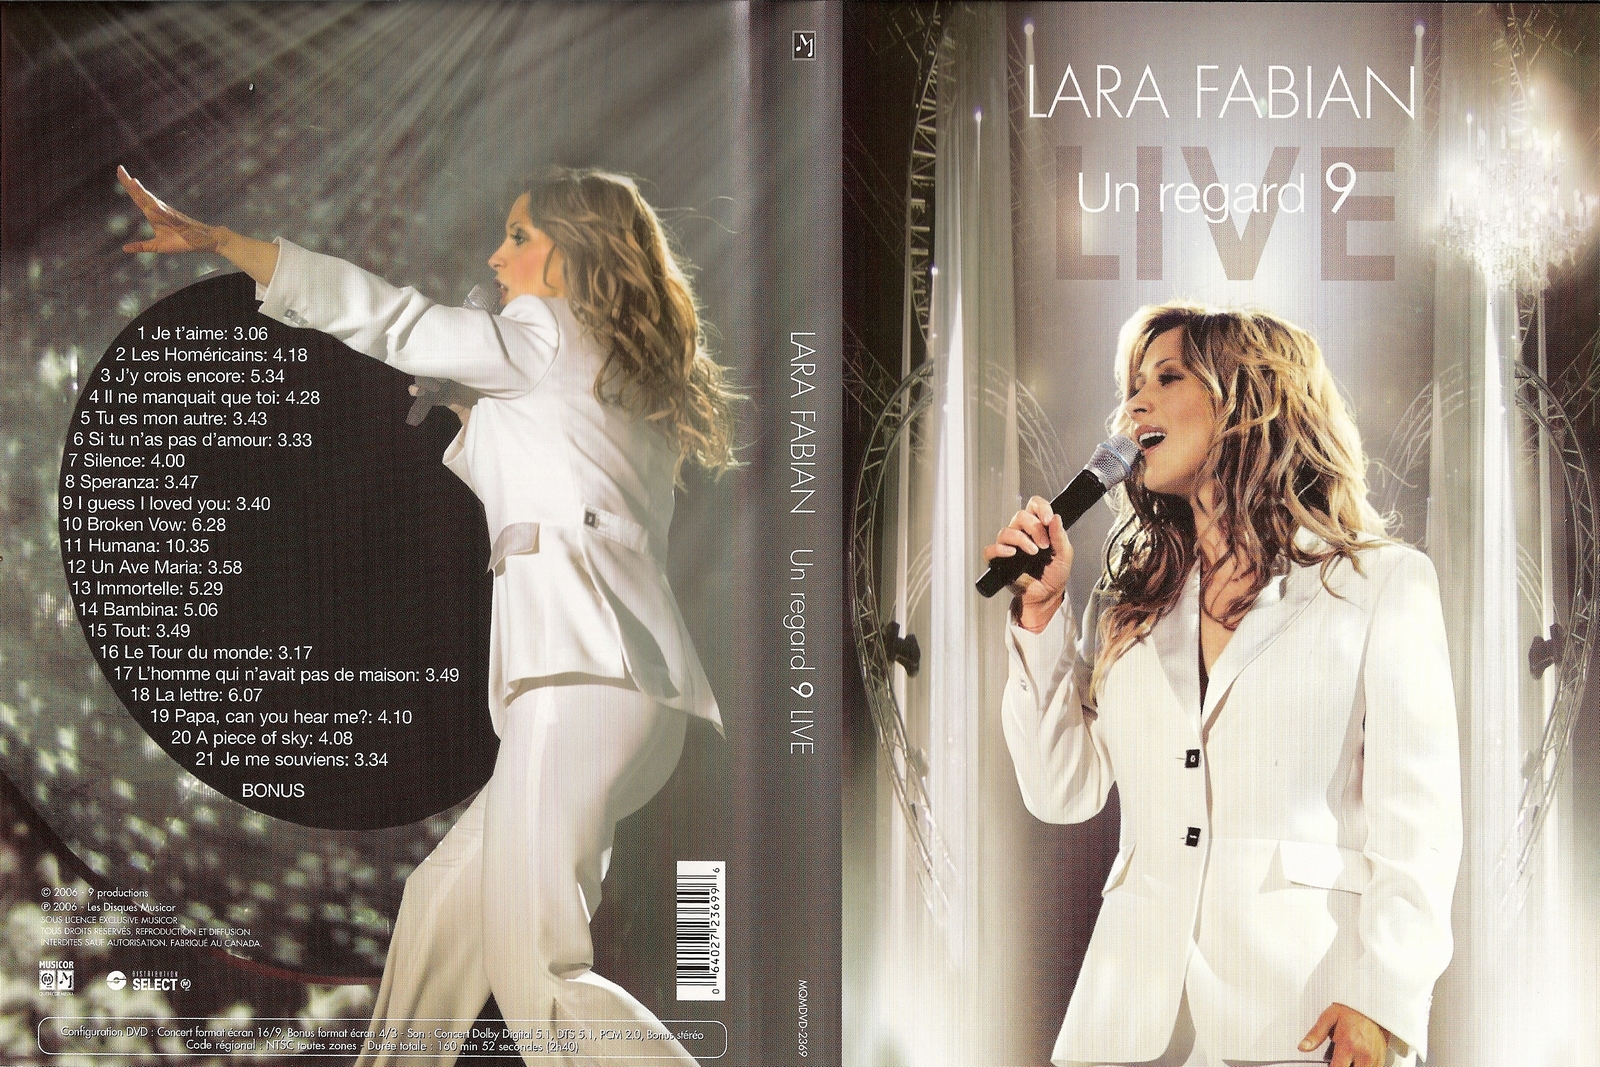 Jaquette DVD Lara Fabian live un regard 9